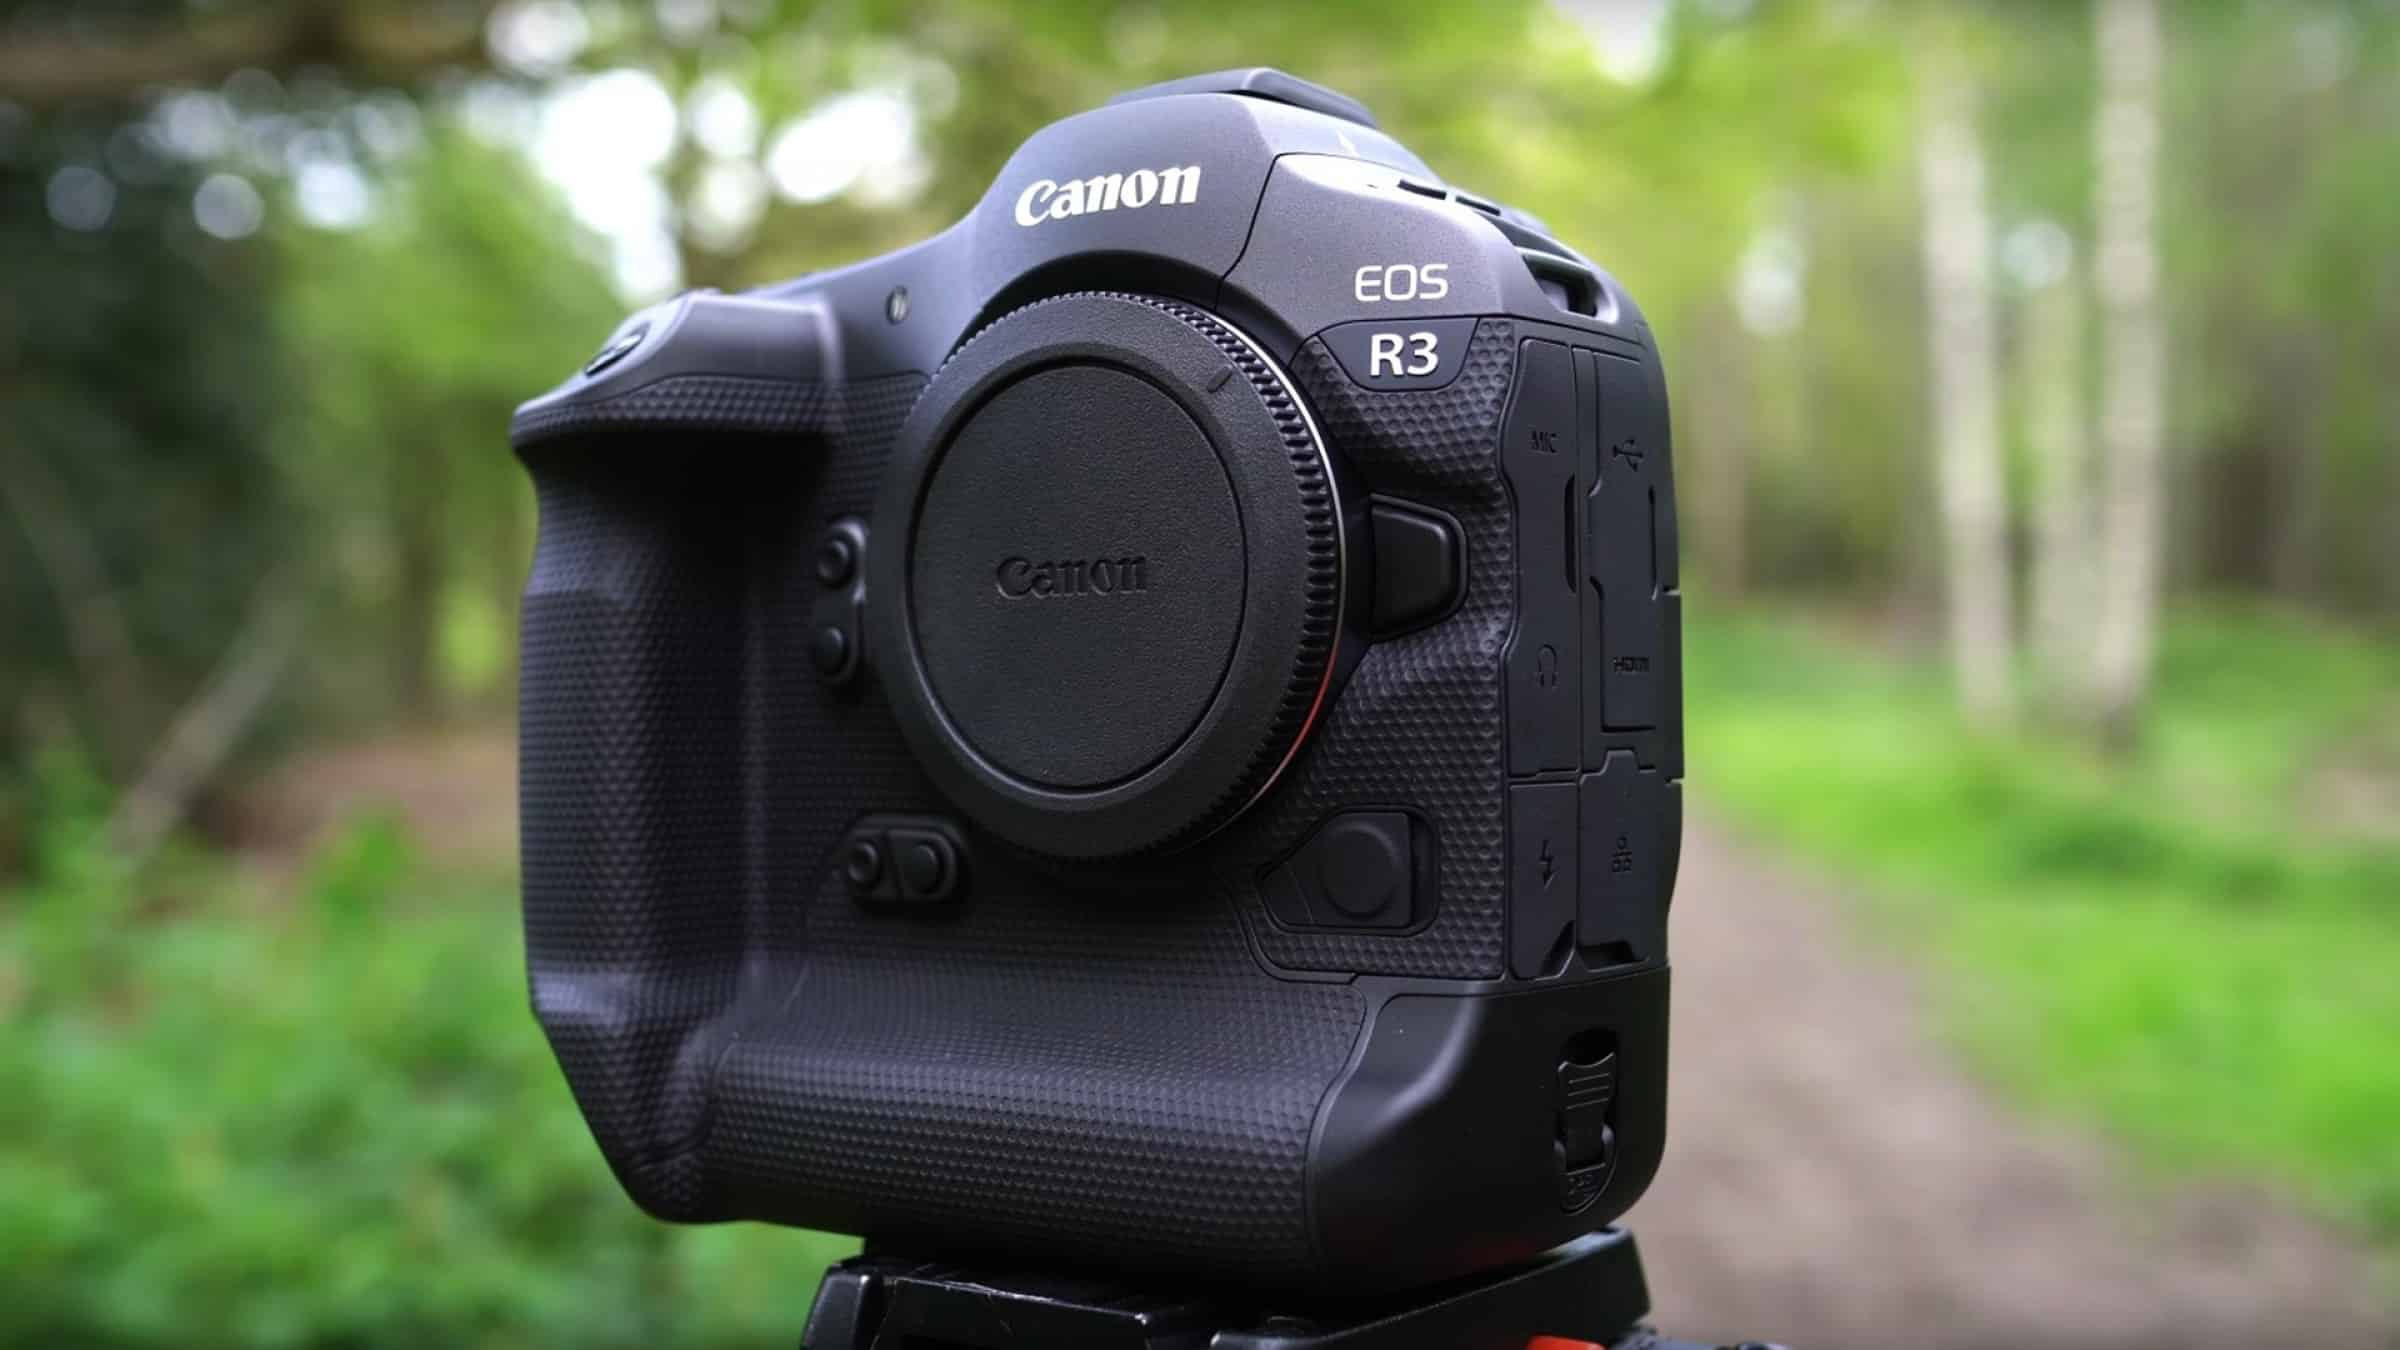 Canon EOS R3 sẽ ra mắt chính thức vào tháng 9 trang bị cảm biến 30.1MP